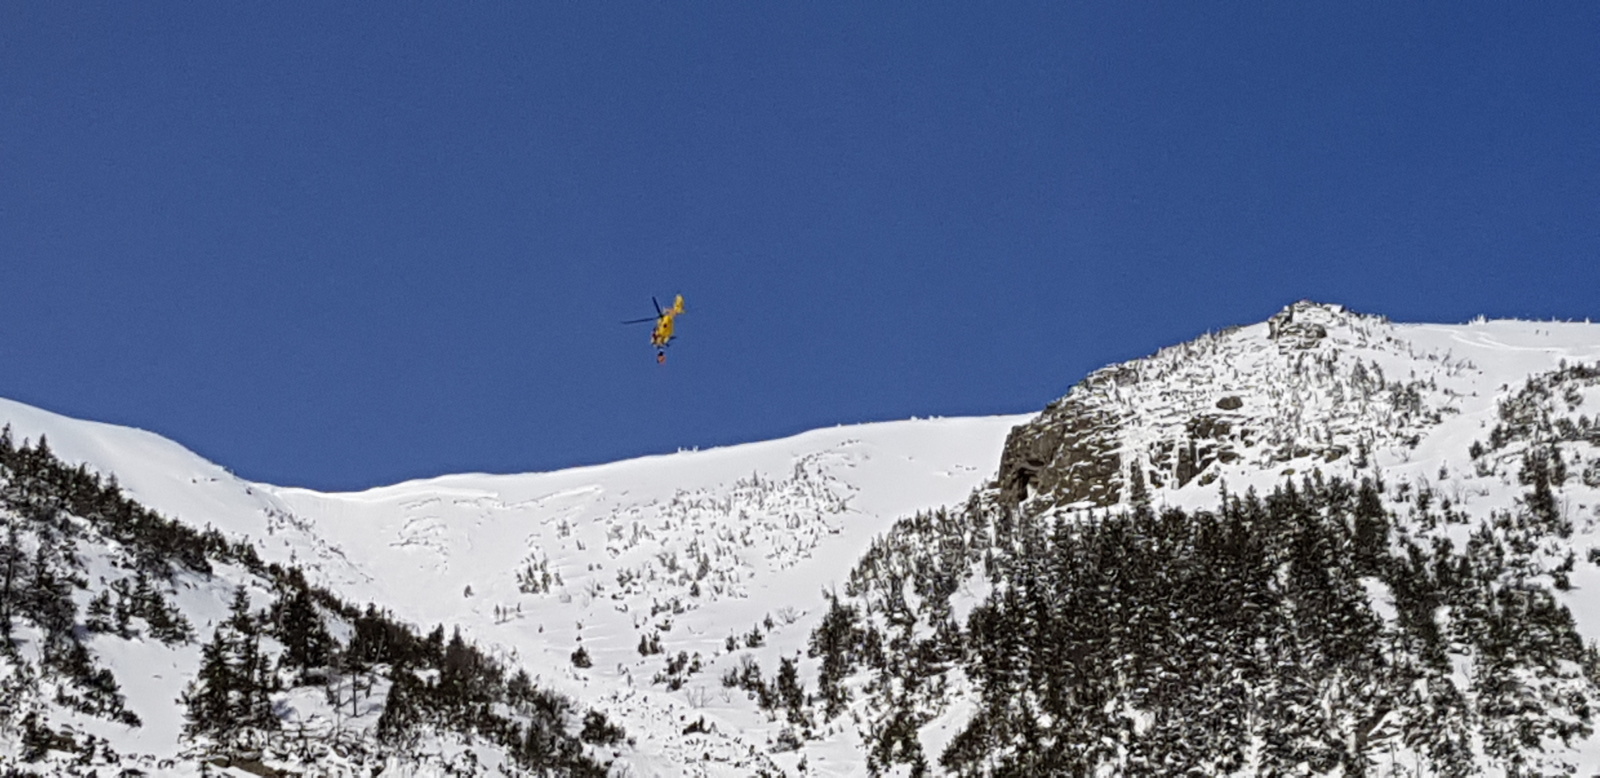  Přílet vrtulníku do střední části pro vyzvednutí staršího skialpinisty (15. 2. 2012 - 13.42)
